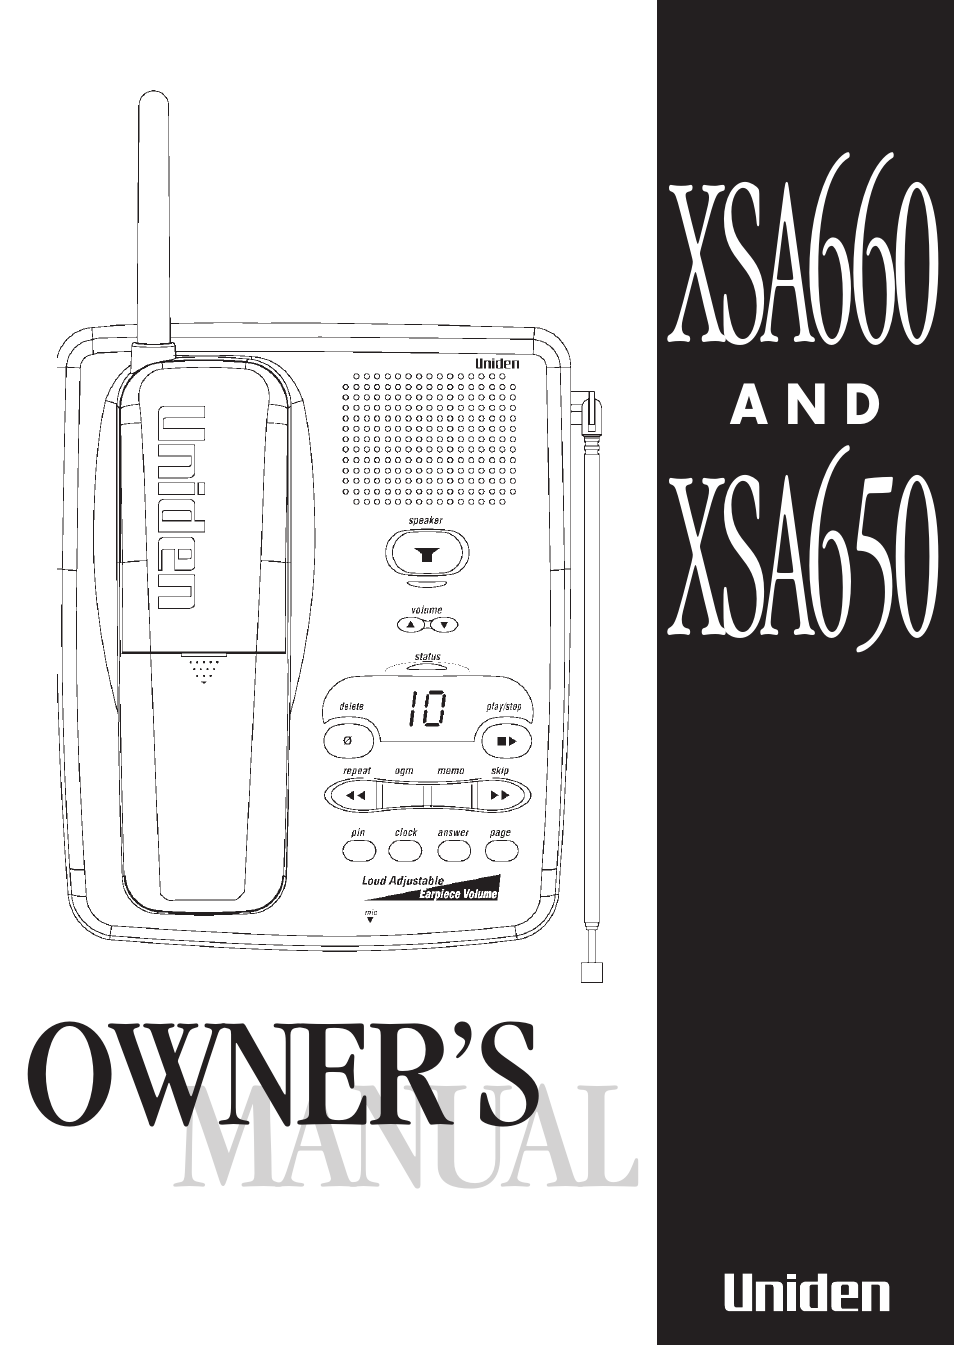 XSA660